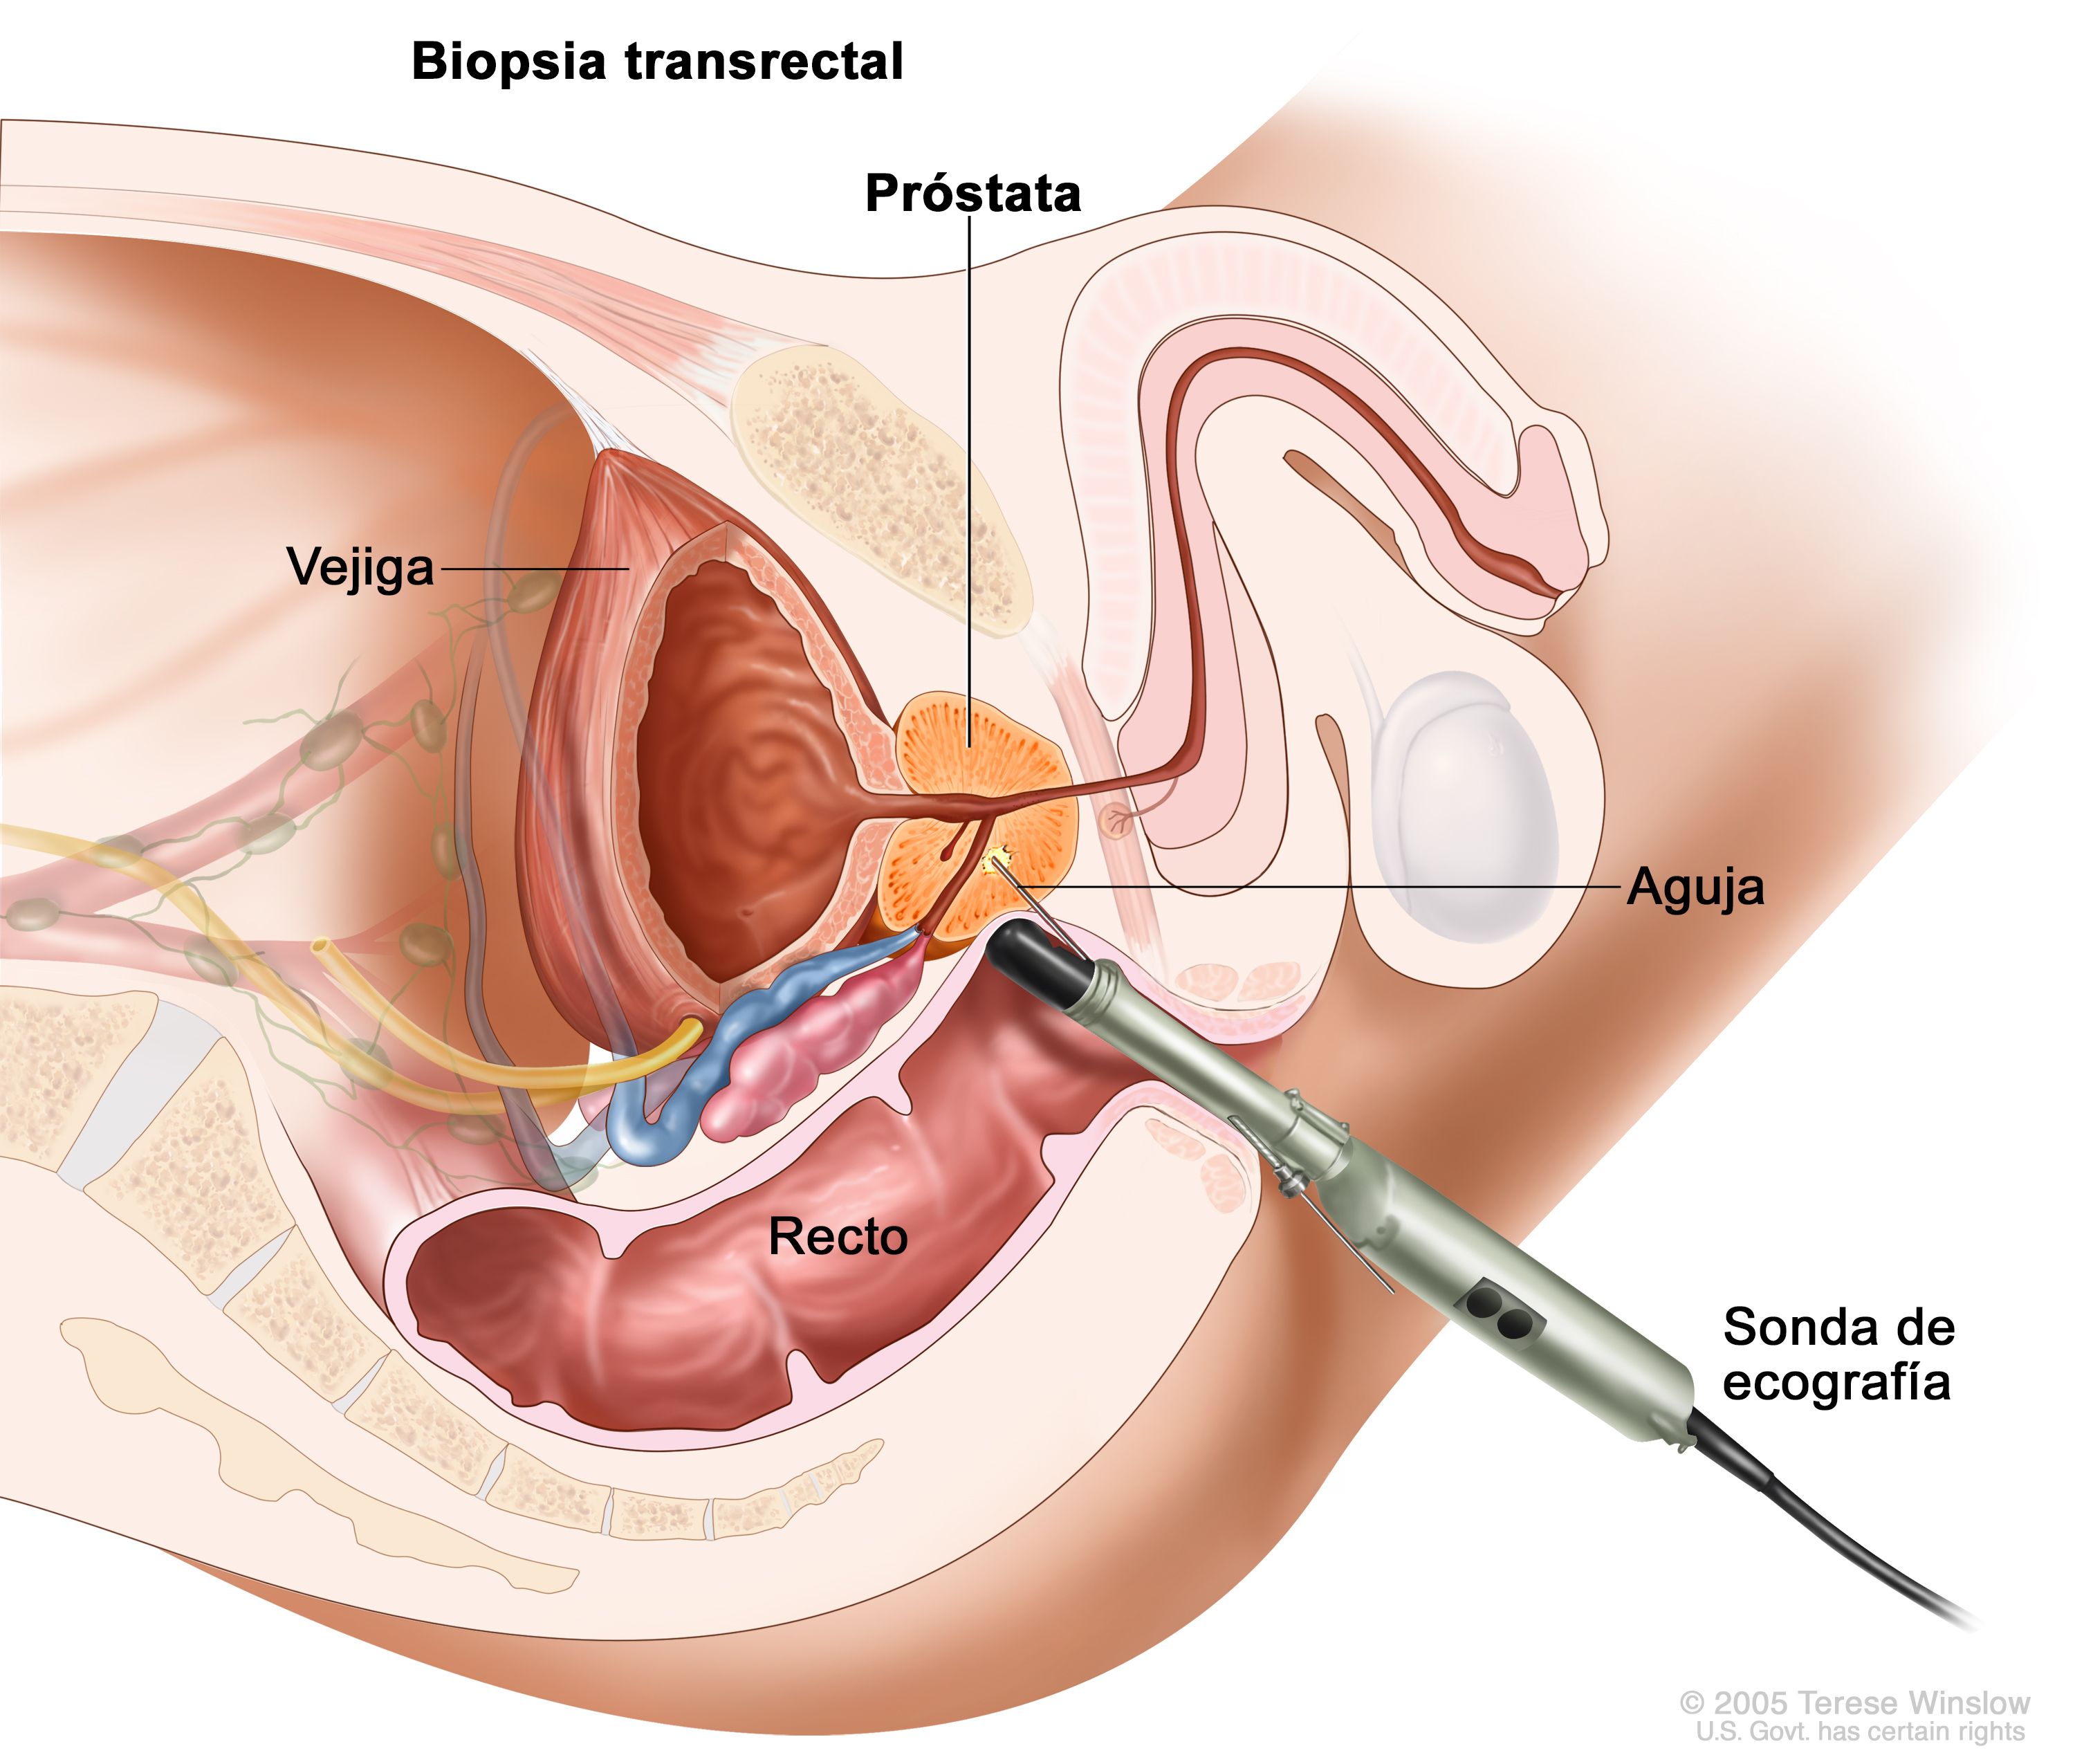 Cum se poate verifica prostatita la bărbați cu ultrasunete sau teste